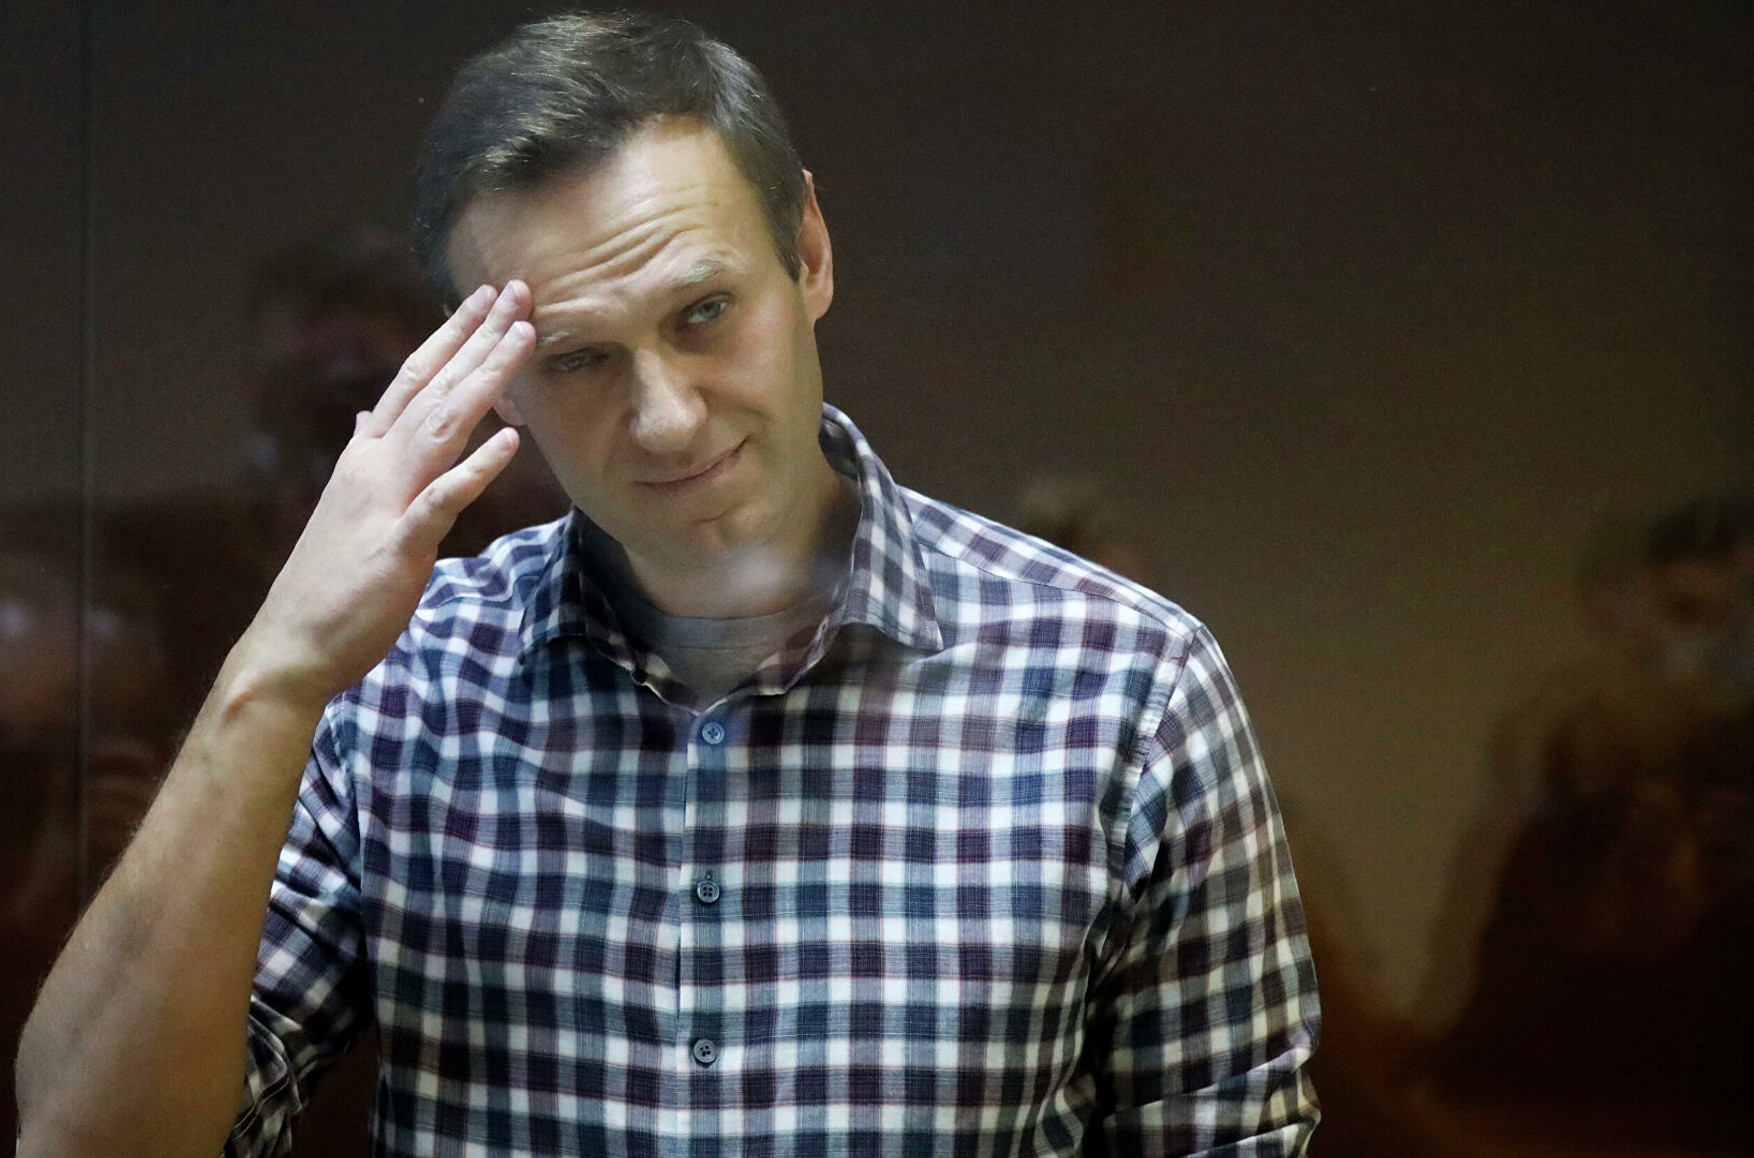 Навального зняли з профучета як схильного до втечі. І тут же поставили на профучет як екстреміста і терориста